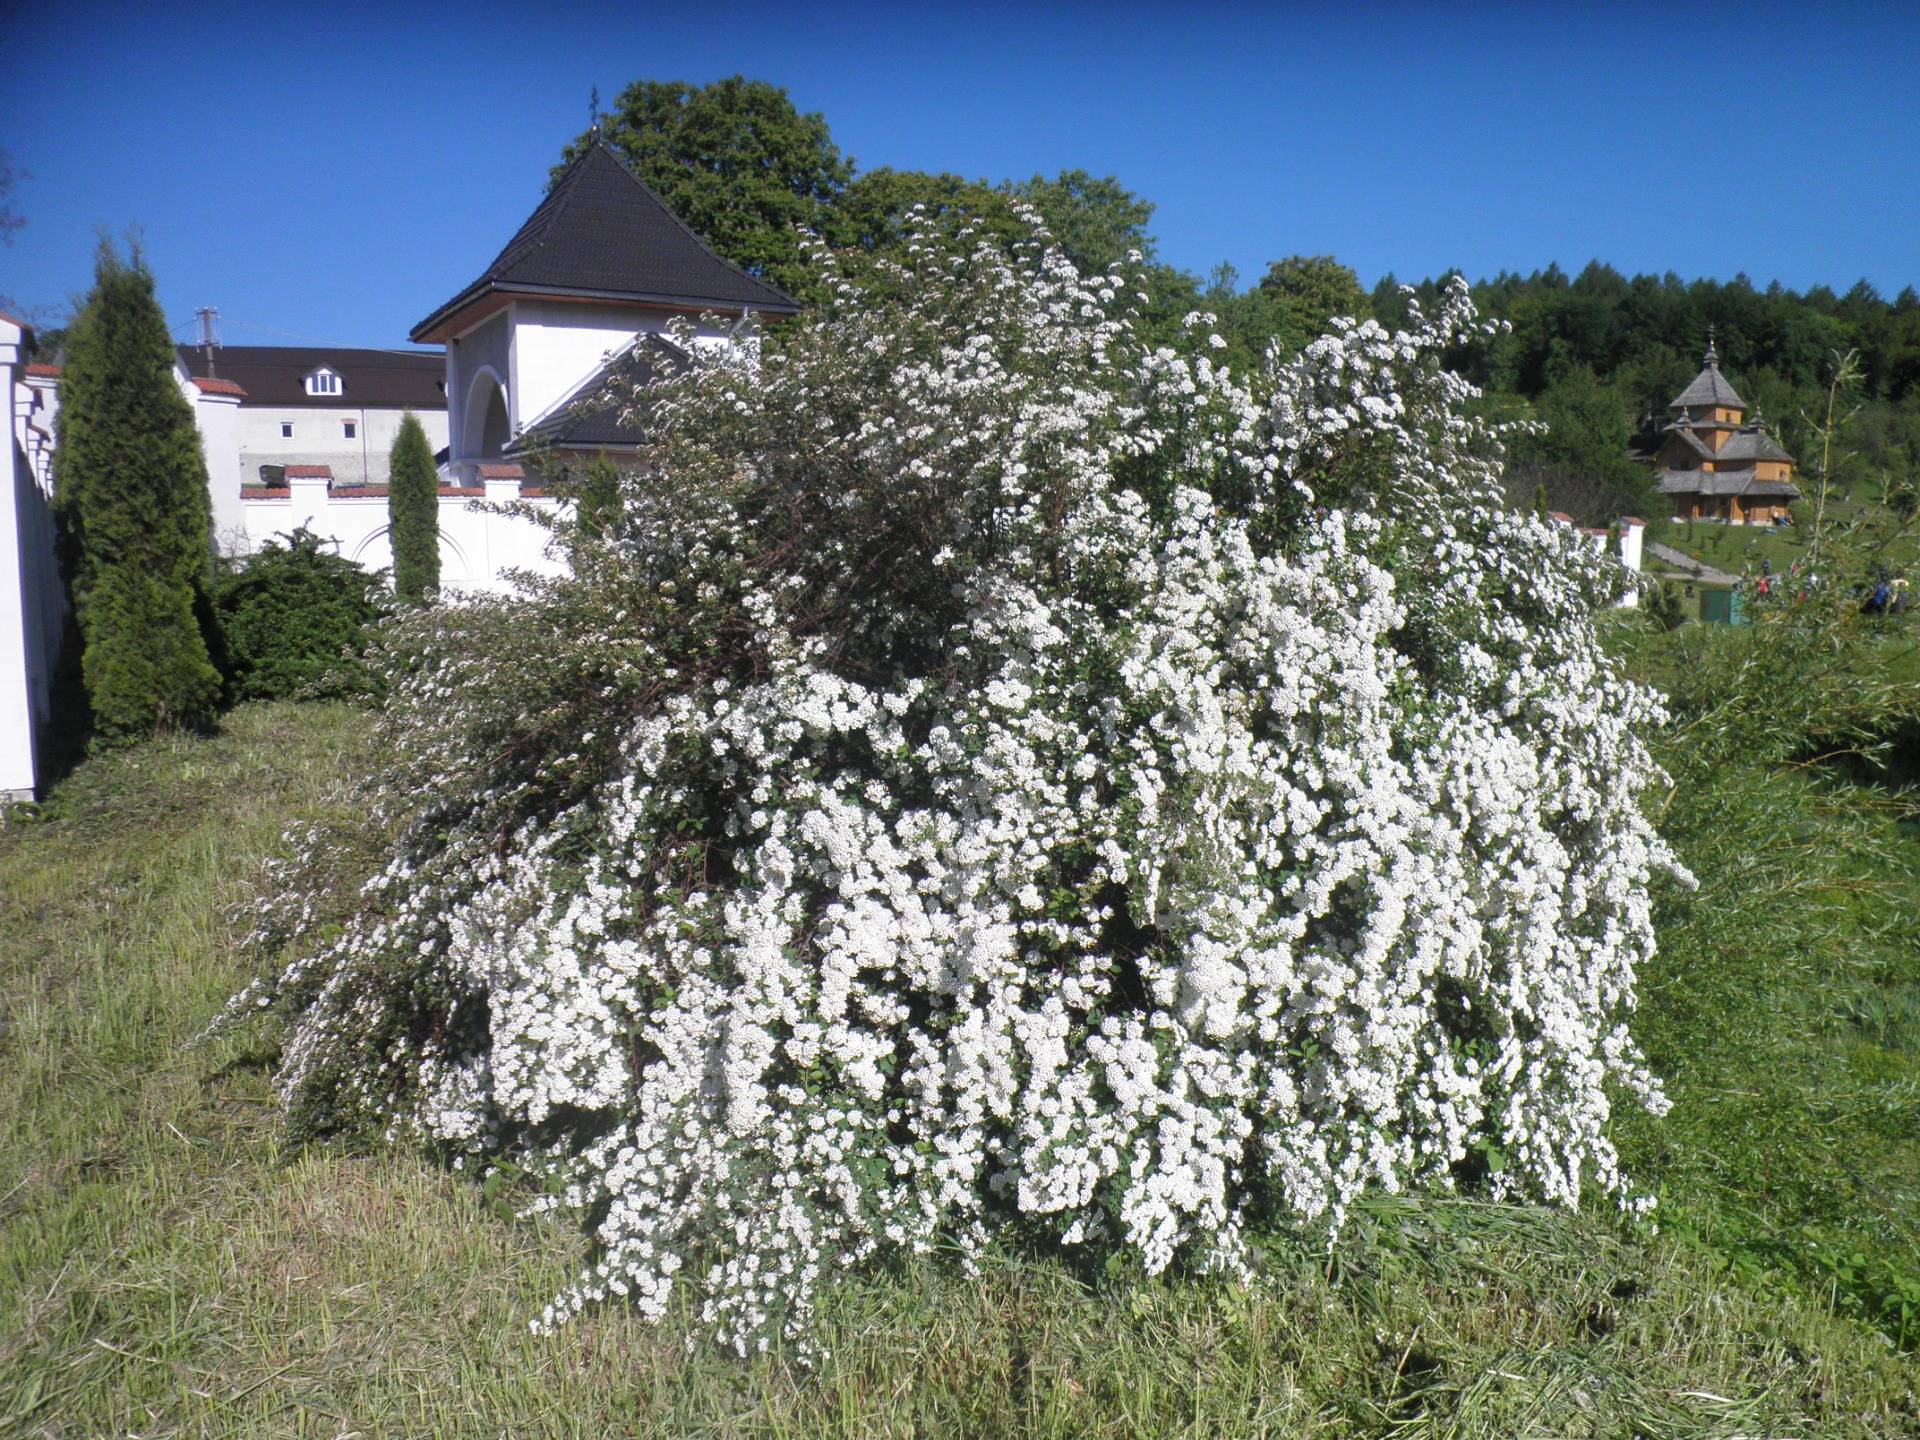 Huge bush of blooming hawthorn